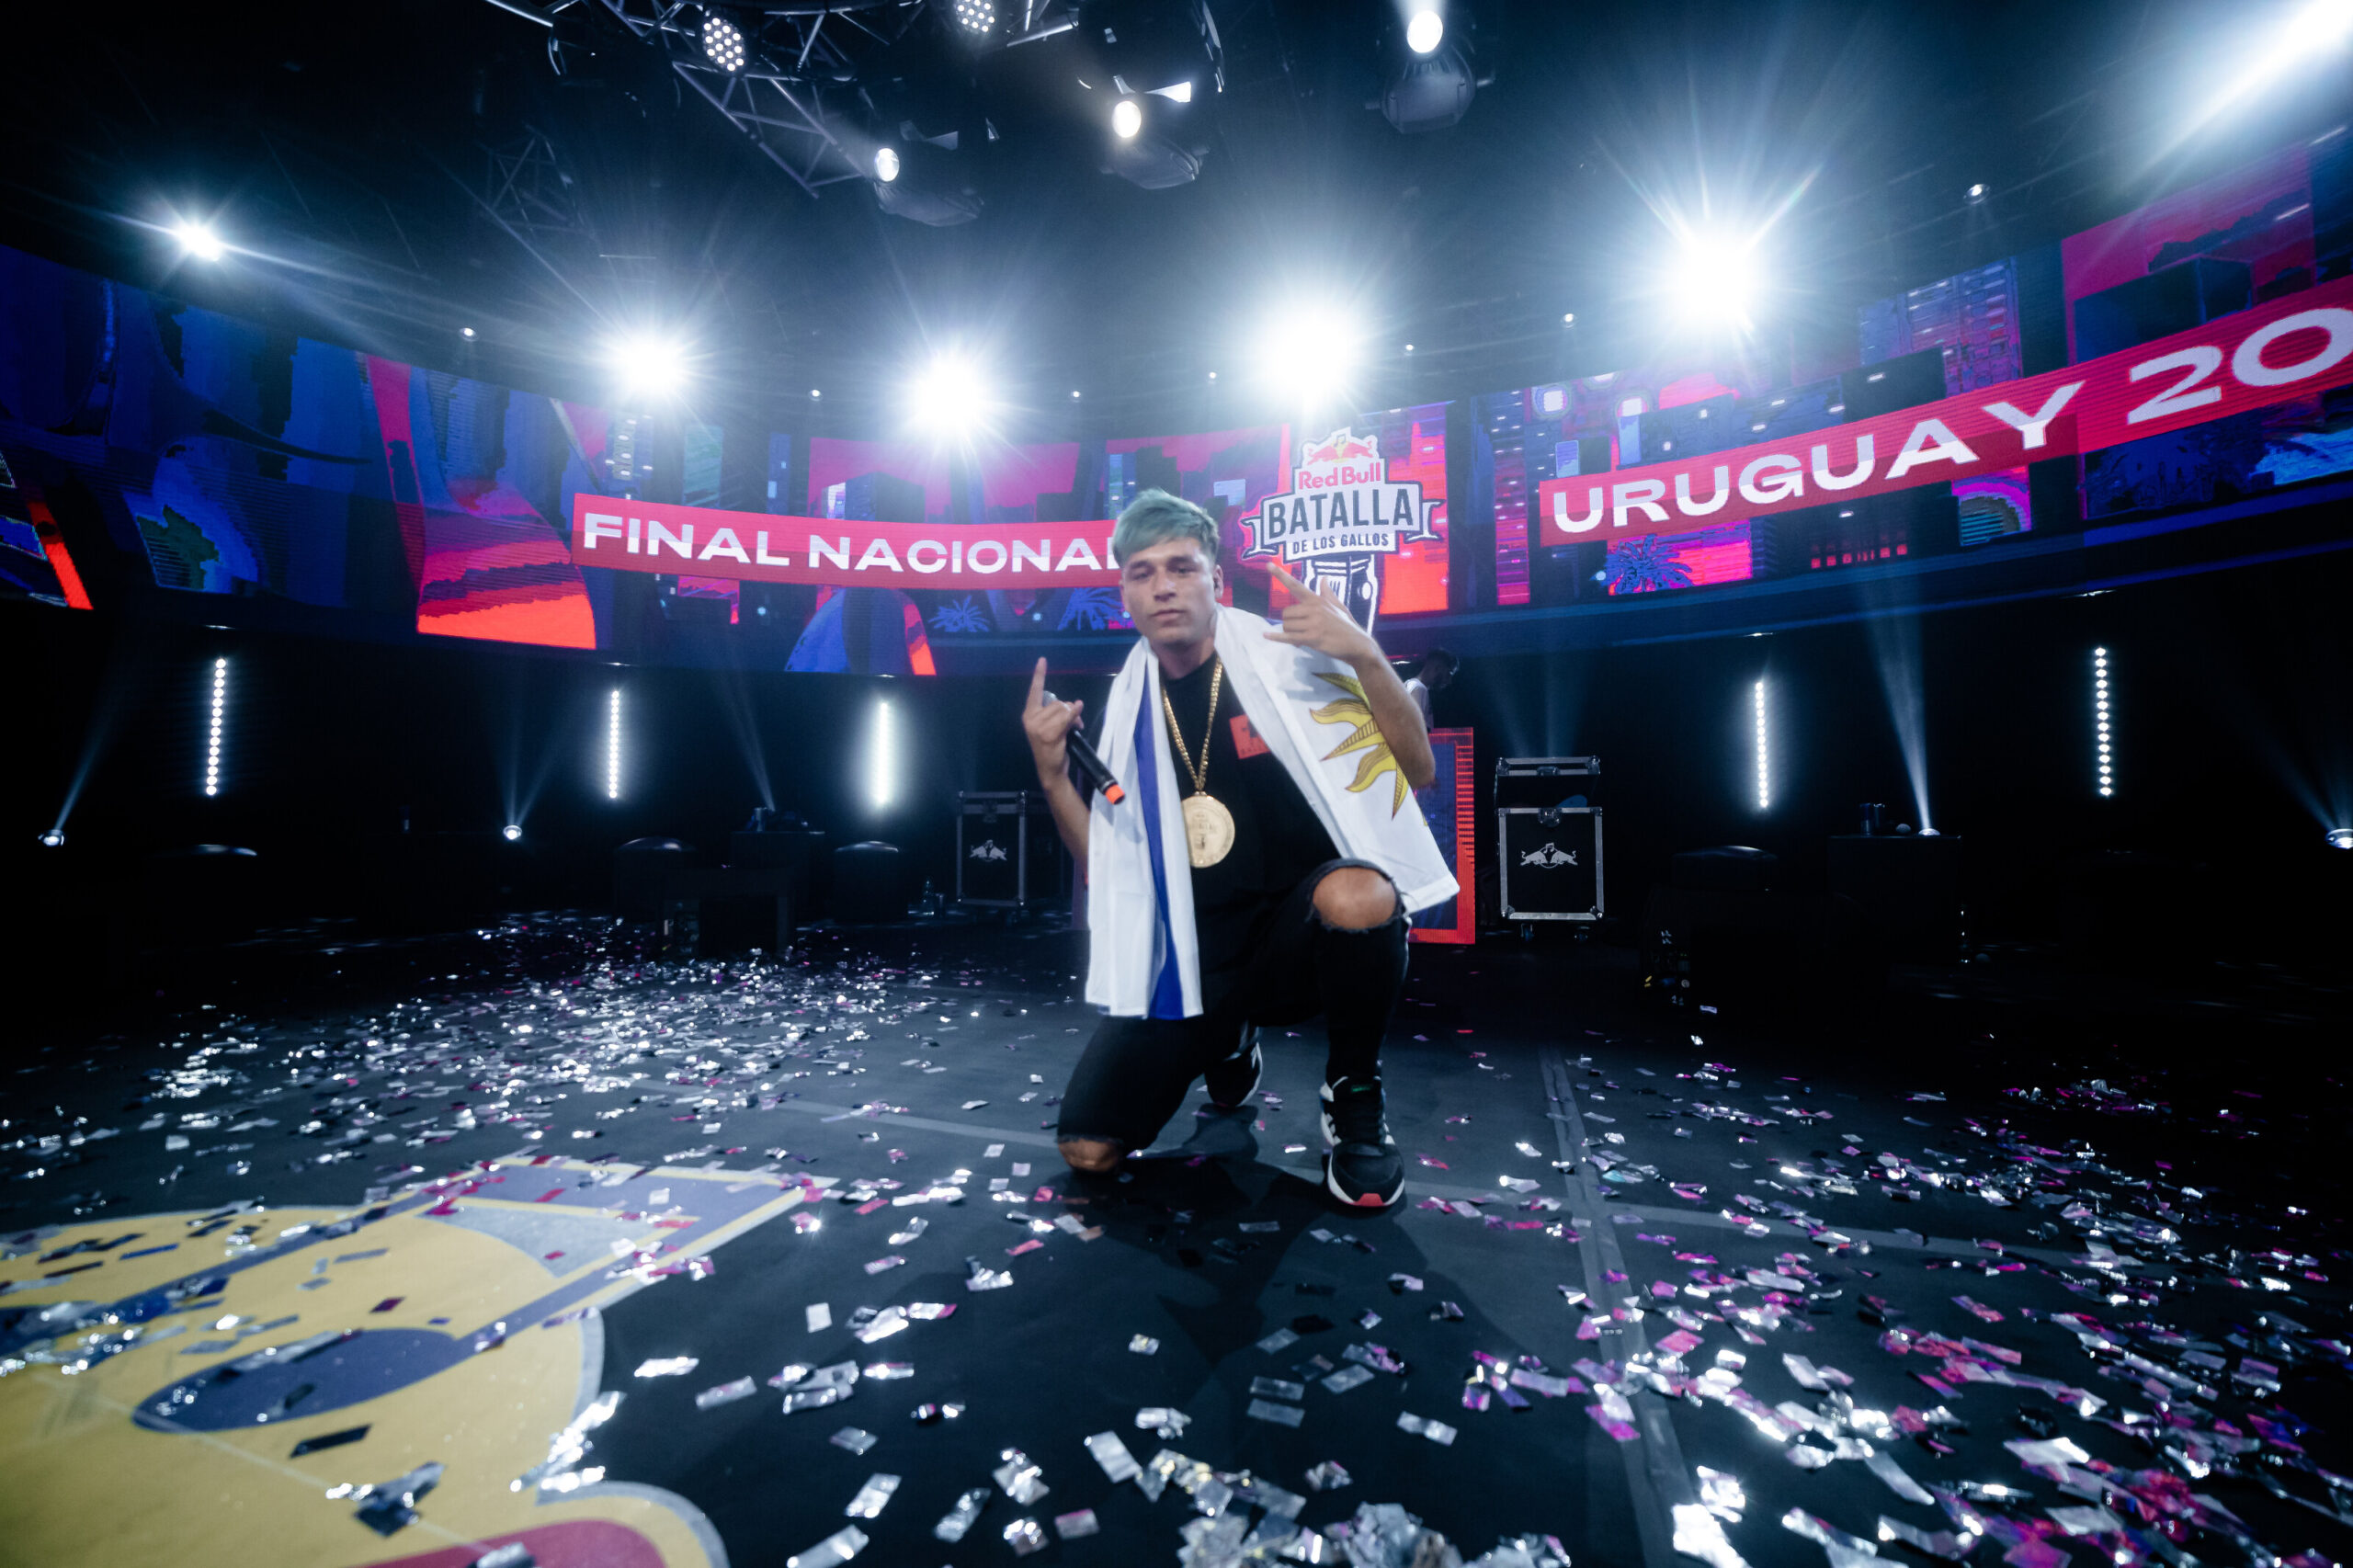 Red Bull Batalla Uruguay: estos son la presentadora, DJ, jurado y casters